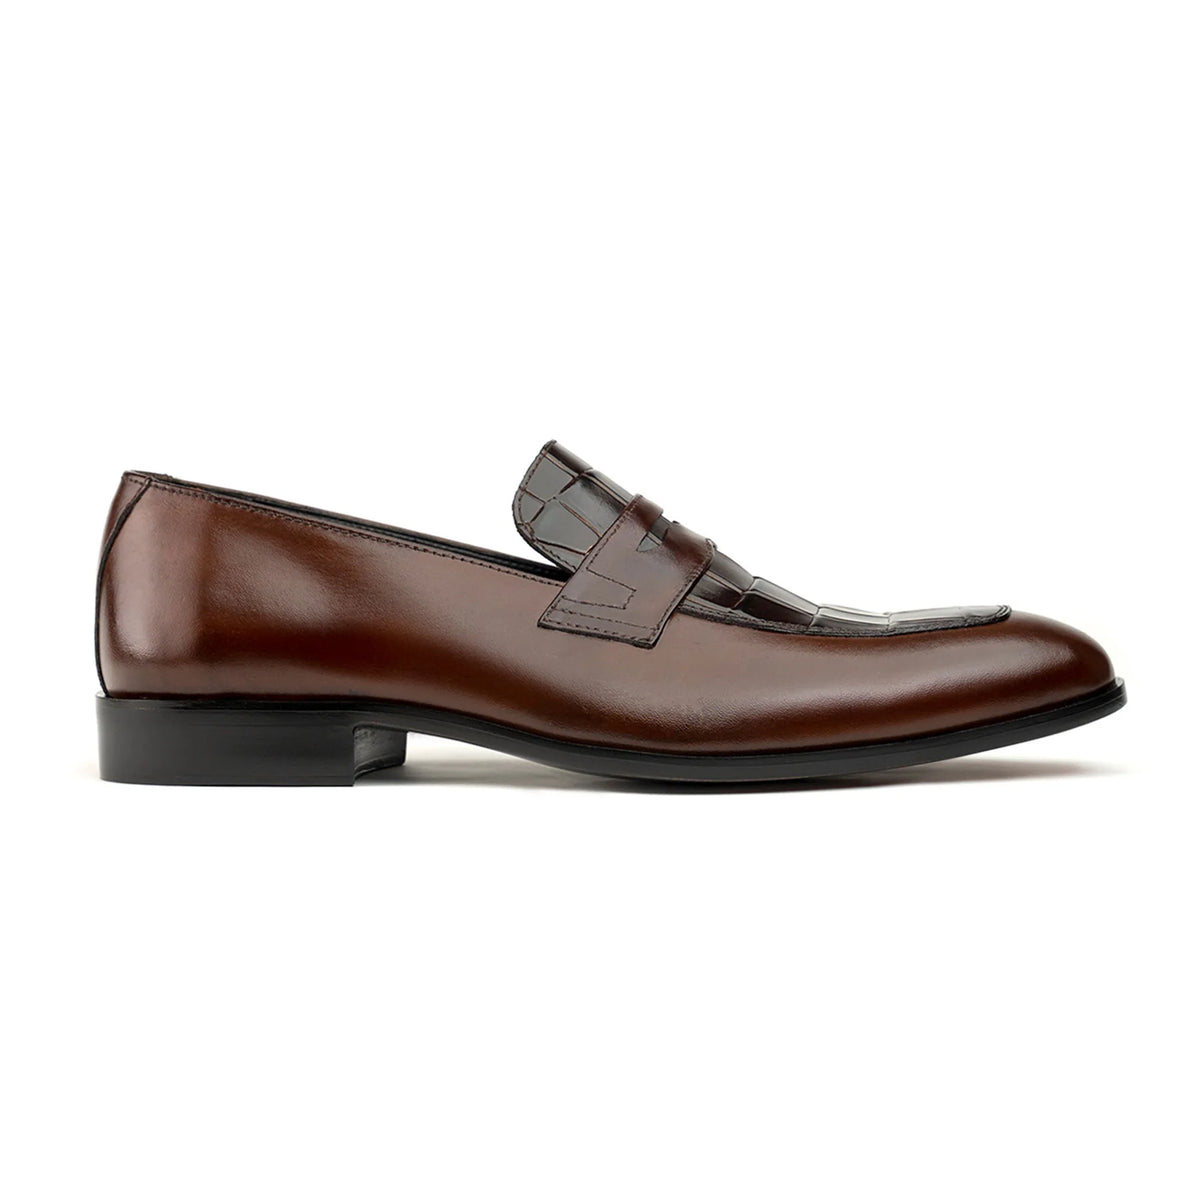 Handmade leather shoes – thesignaturelifestyle